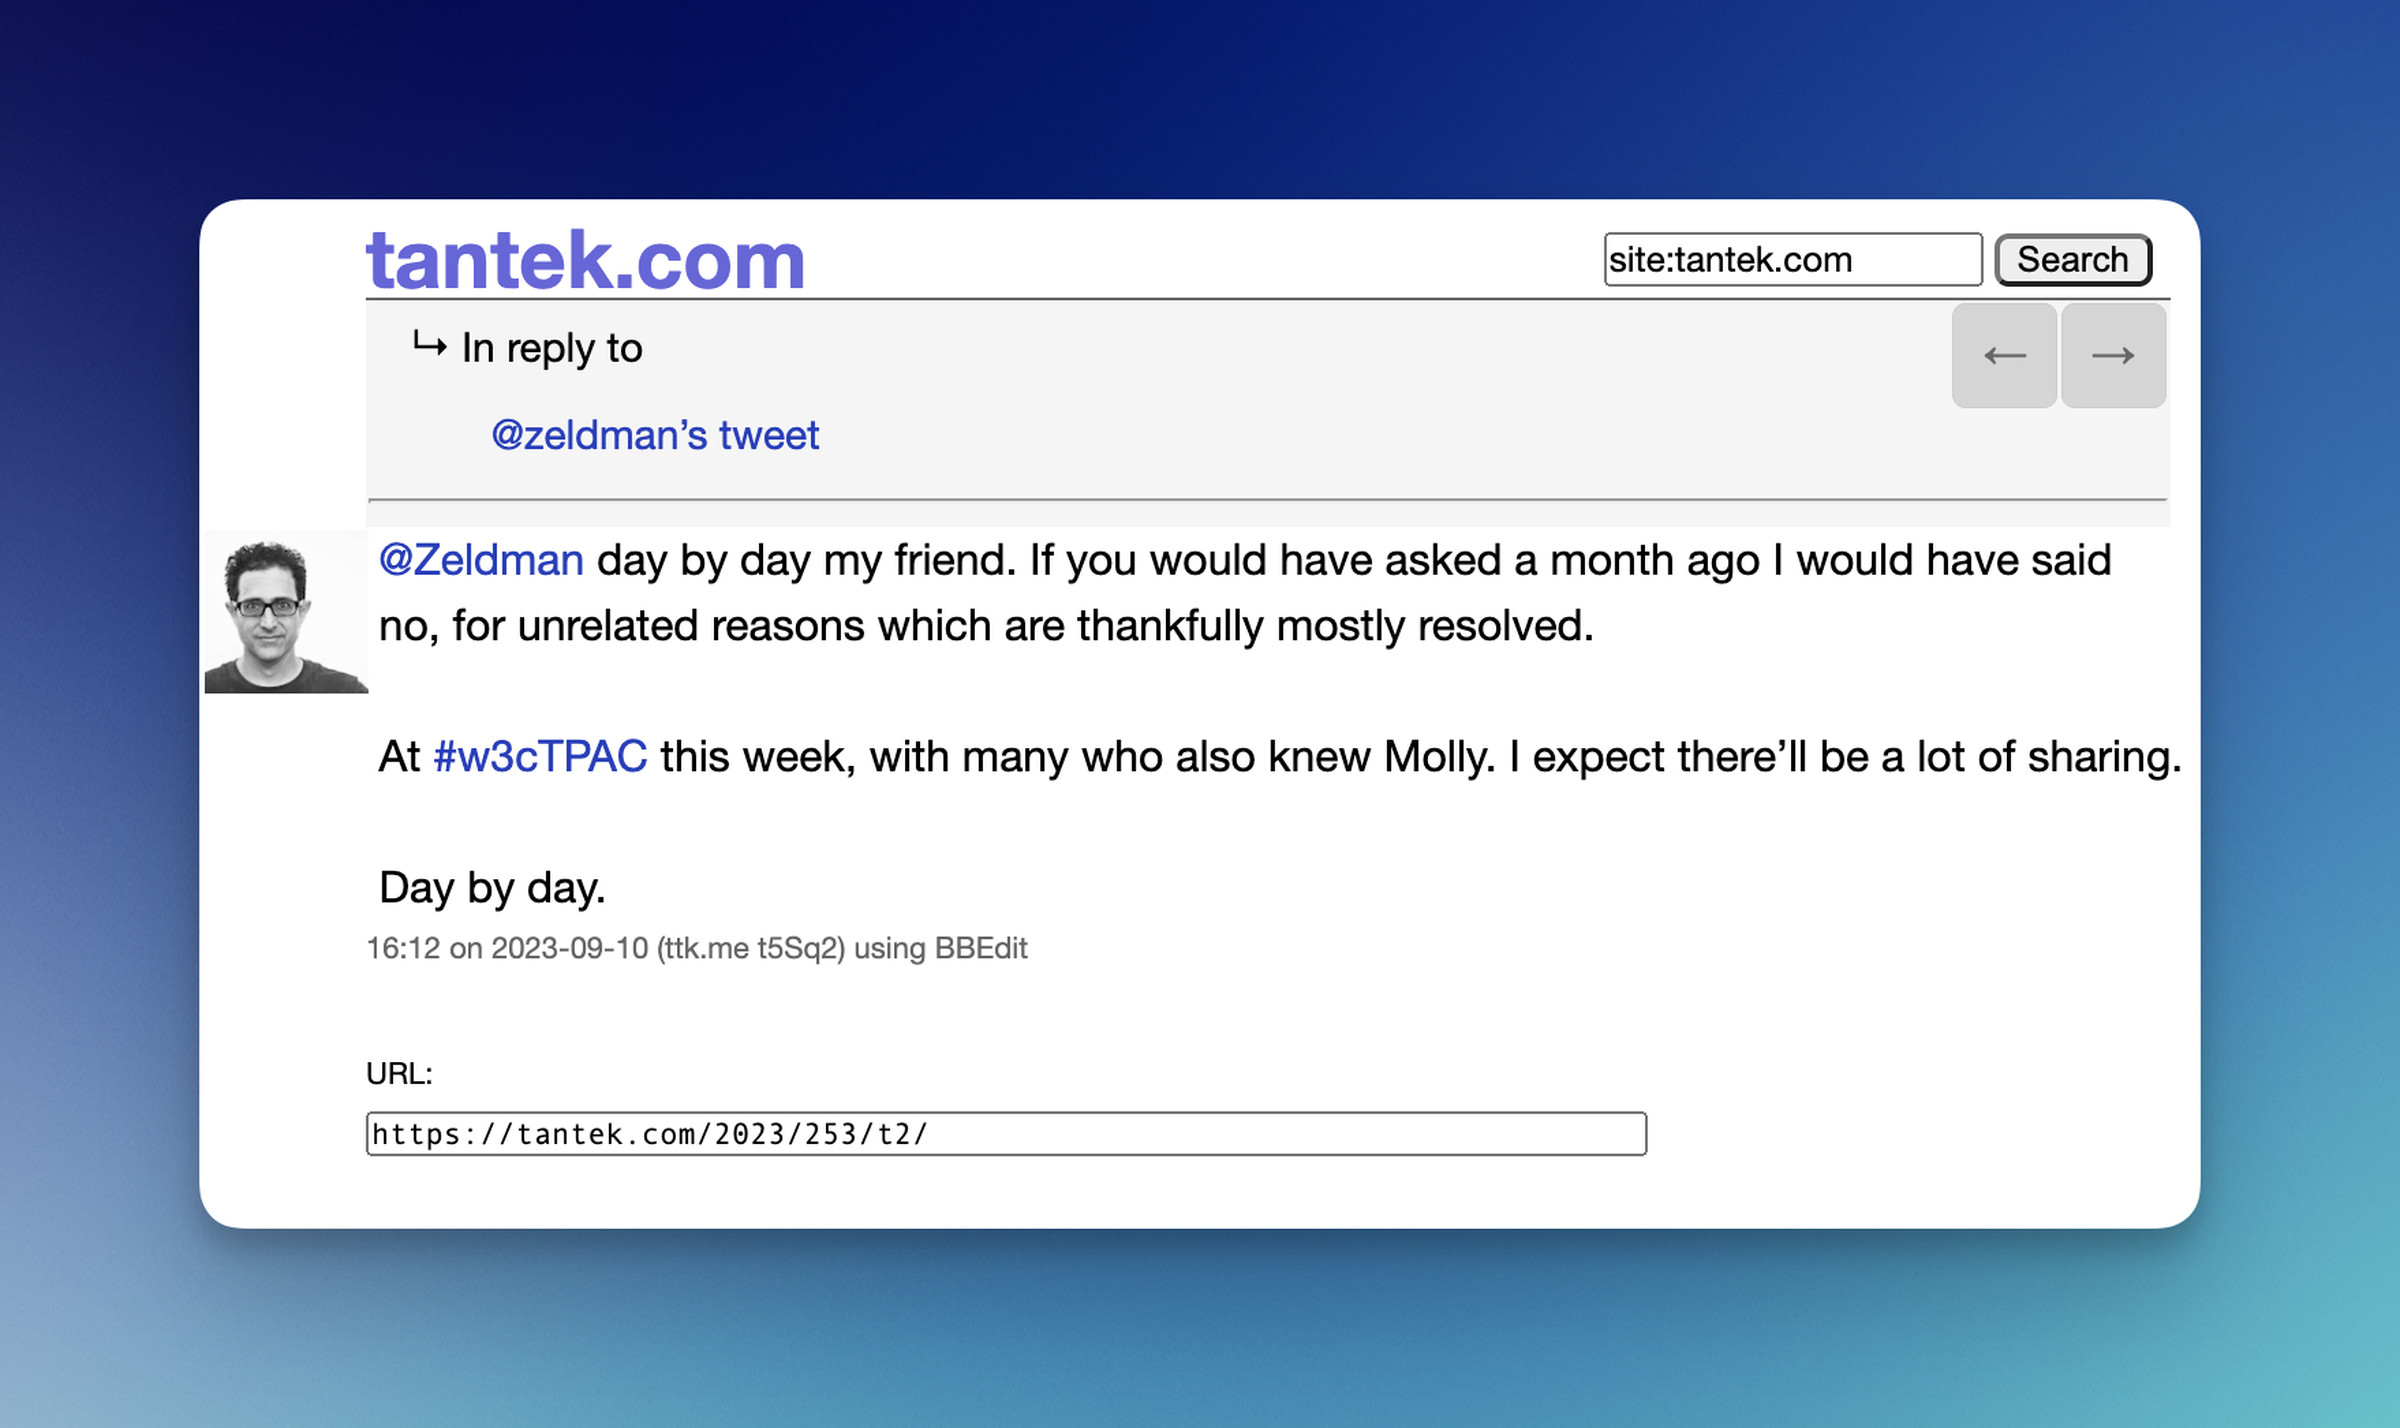 A screenshot of a blog post from Tantek.com